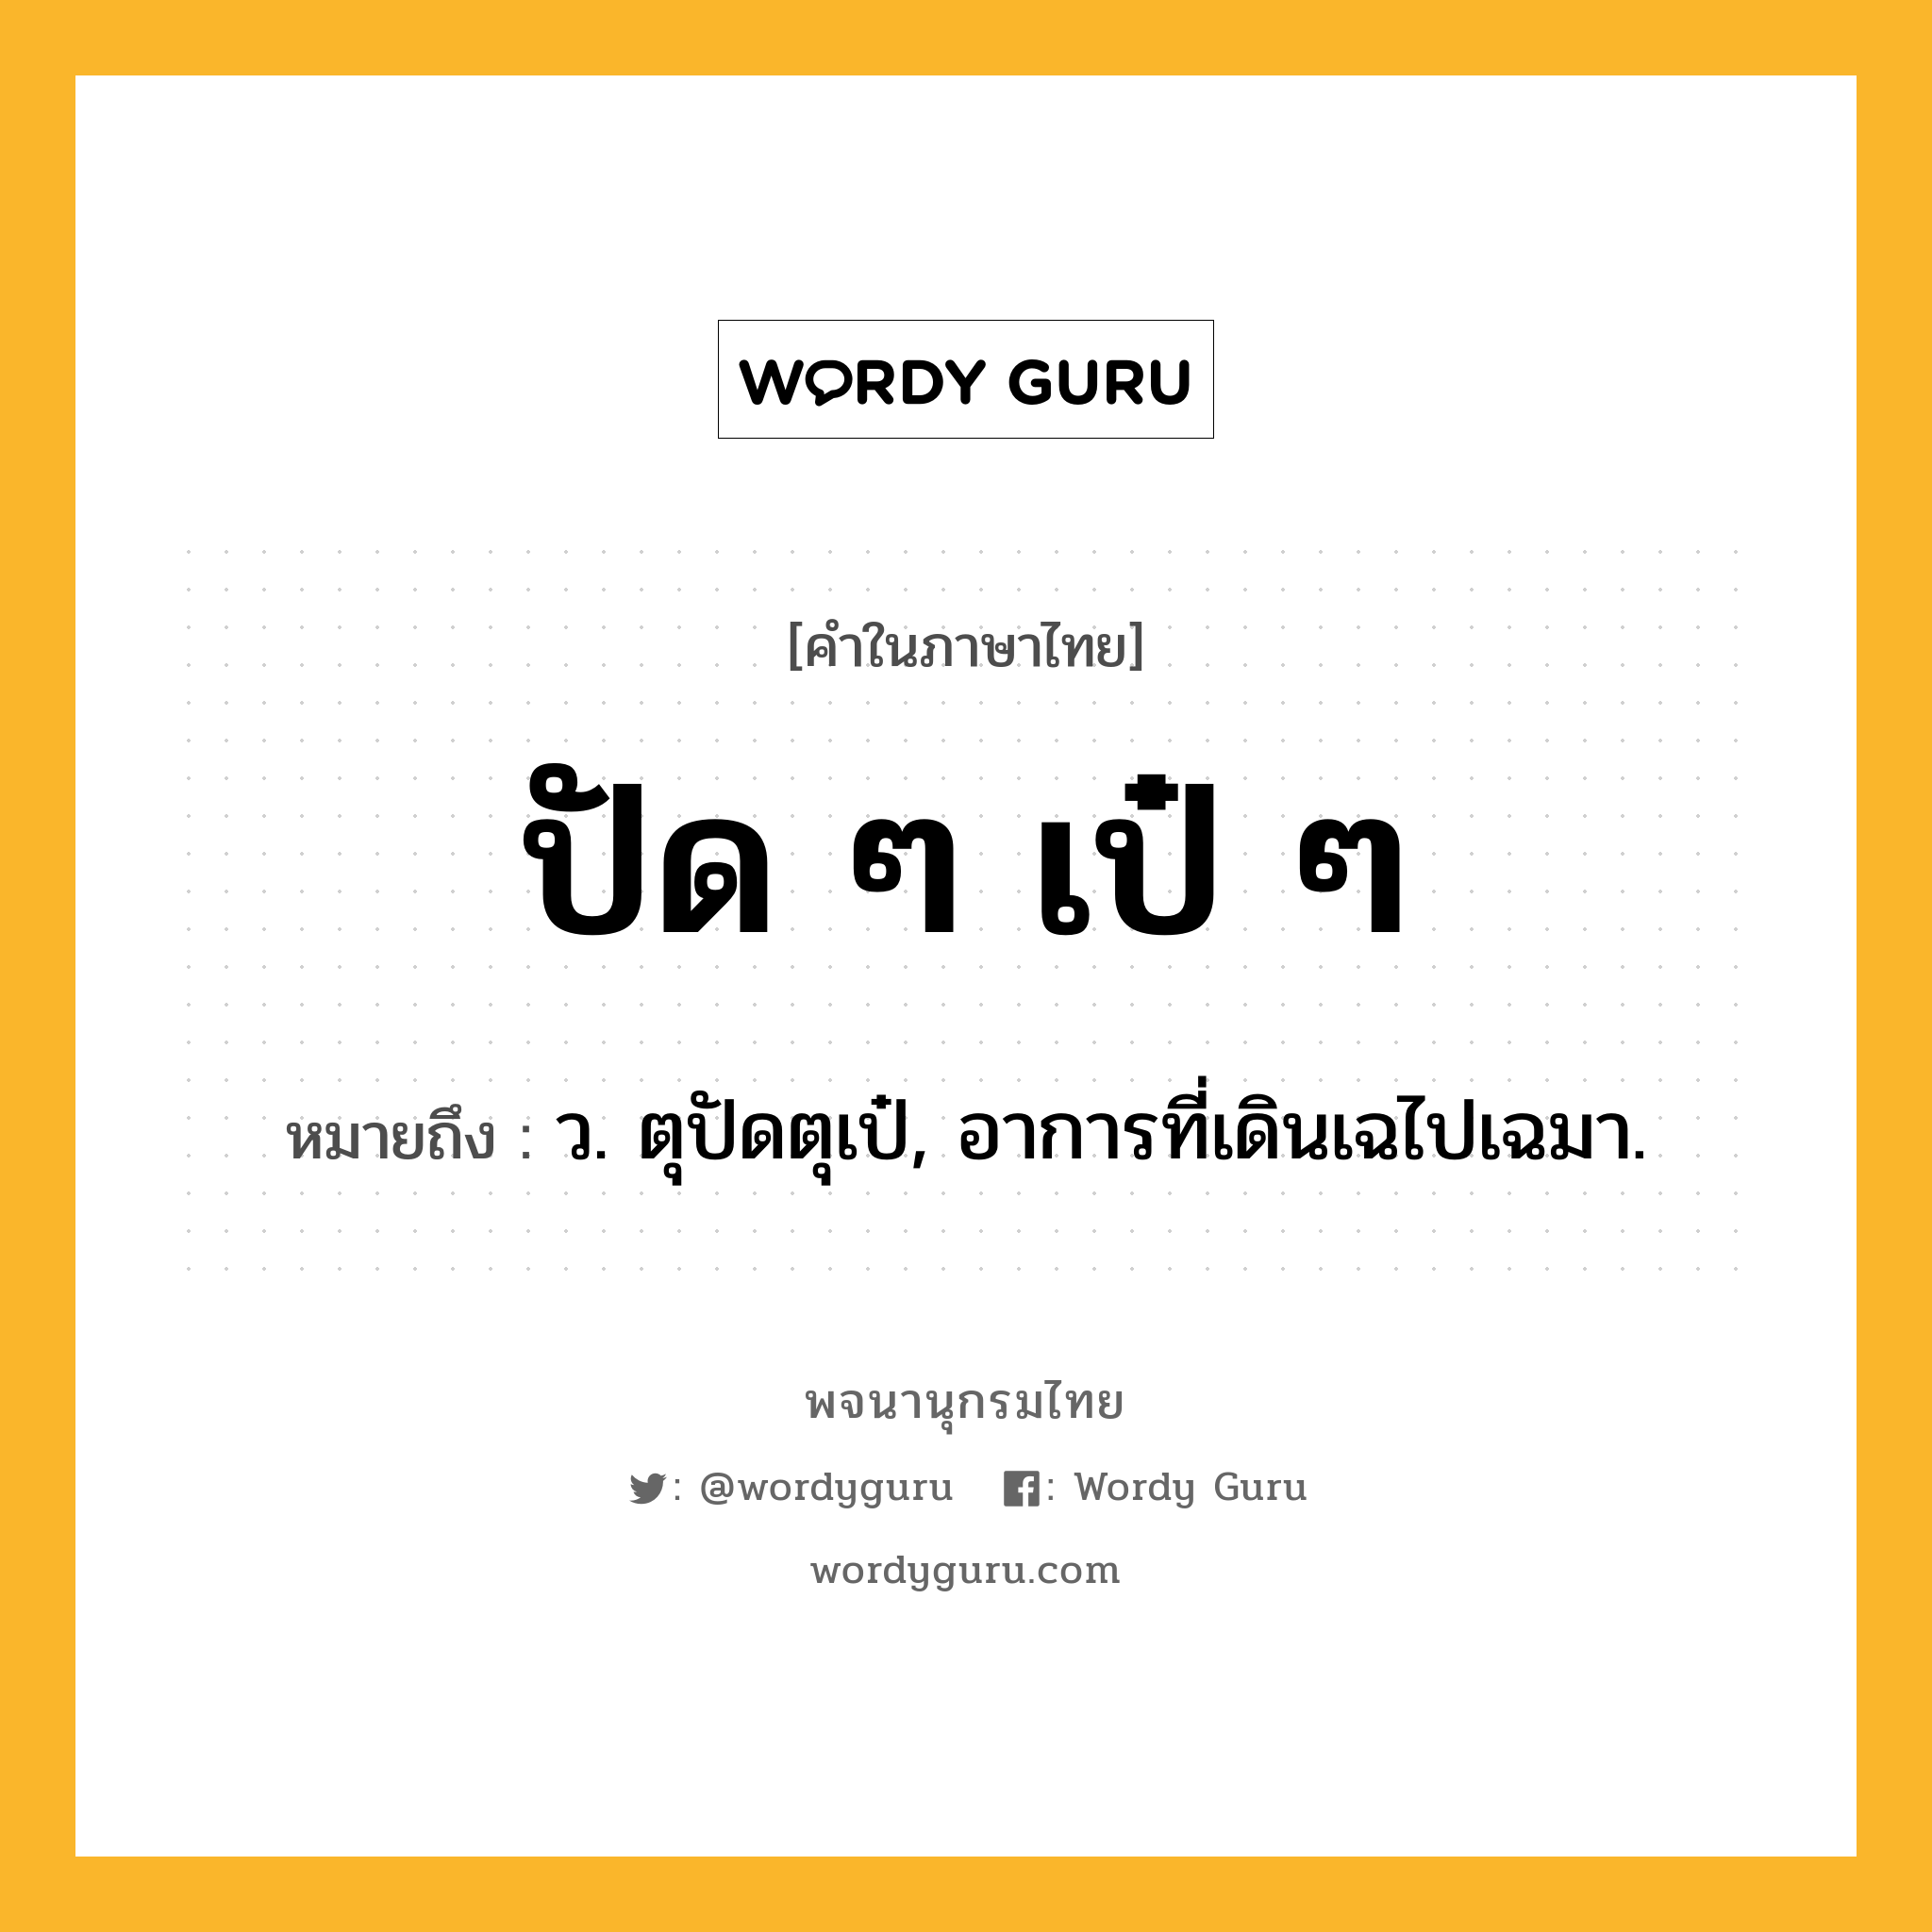 ปัด ๆ เป๋ ๆ หมายถึงอะไร?, คำในภาษาไทย ปัด ๆ เป๋ ๆ หมายถึง ว. ตุปัดตุเป๋, อาการที่เดินเฉไปเฉมา.